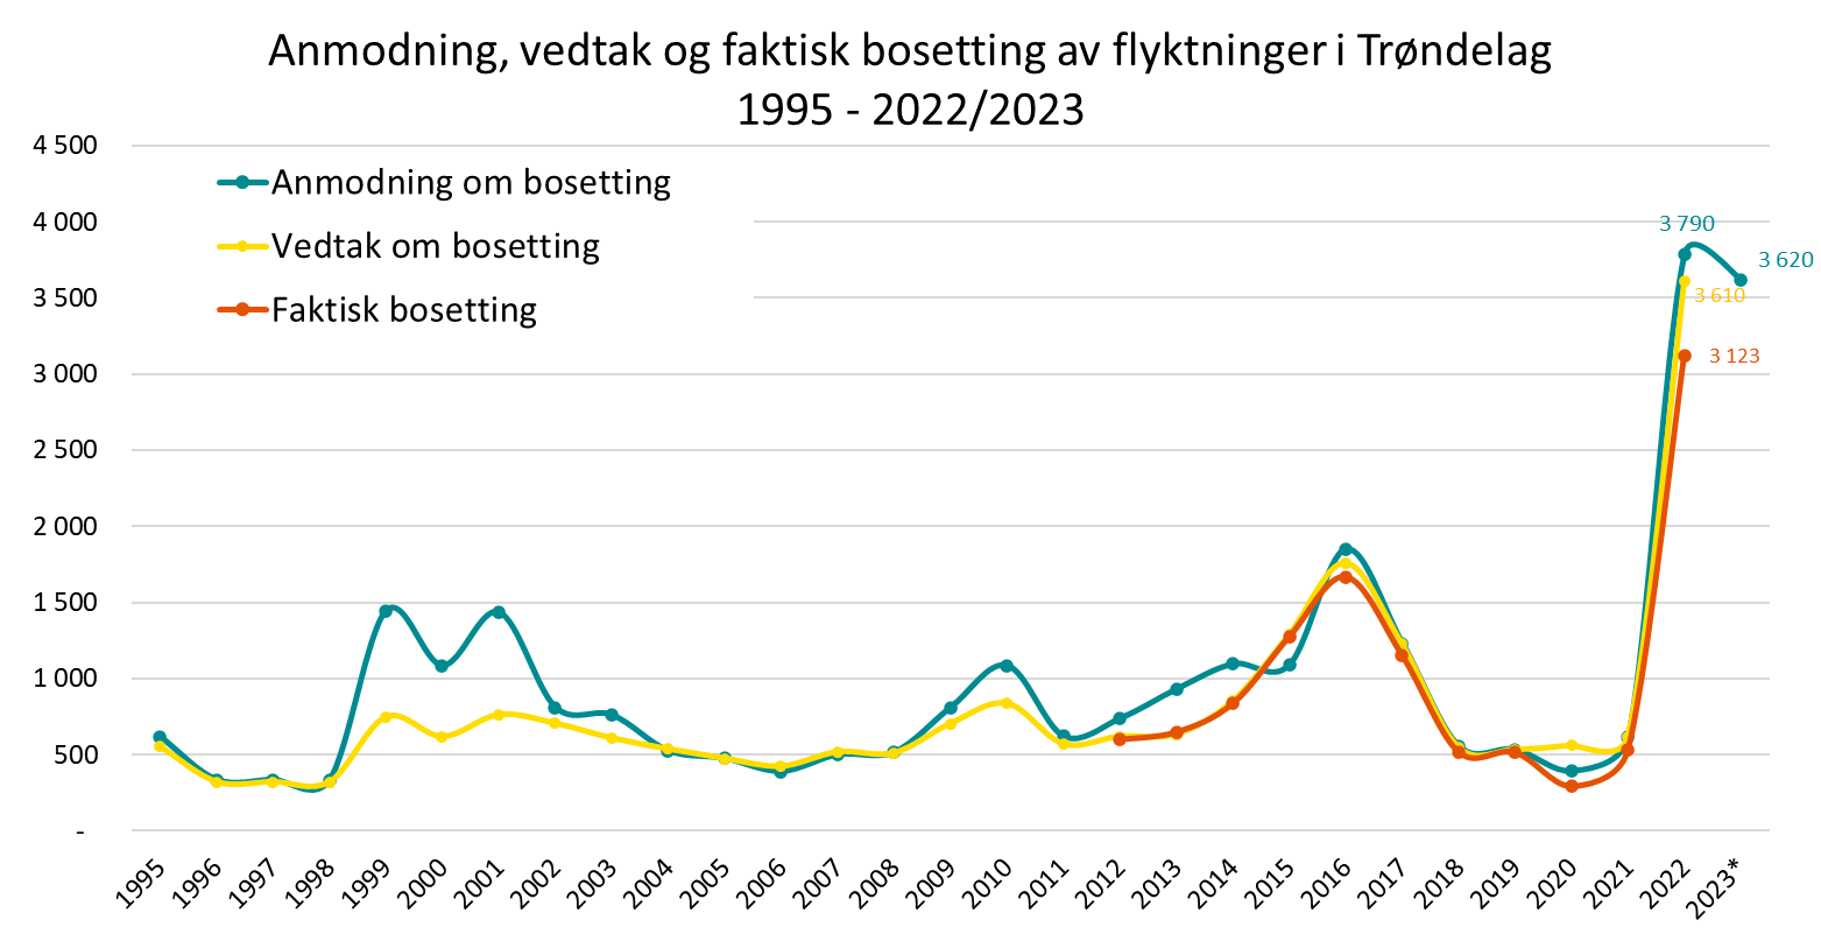 Anmodning, vedtak og faktisk bosetting av flyktninger i Trøndelag 1995-2022/2023